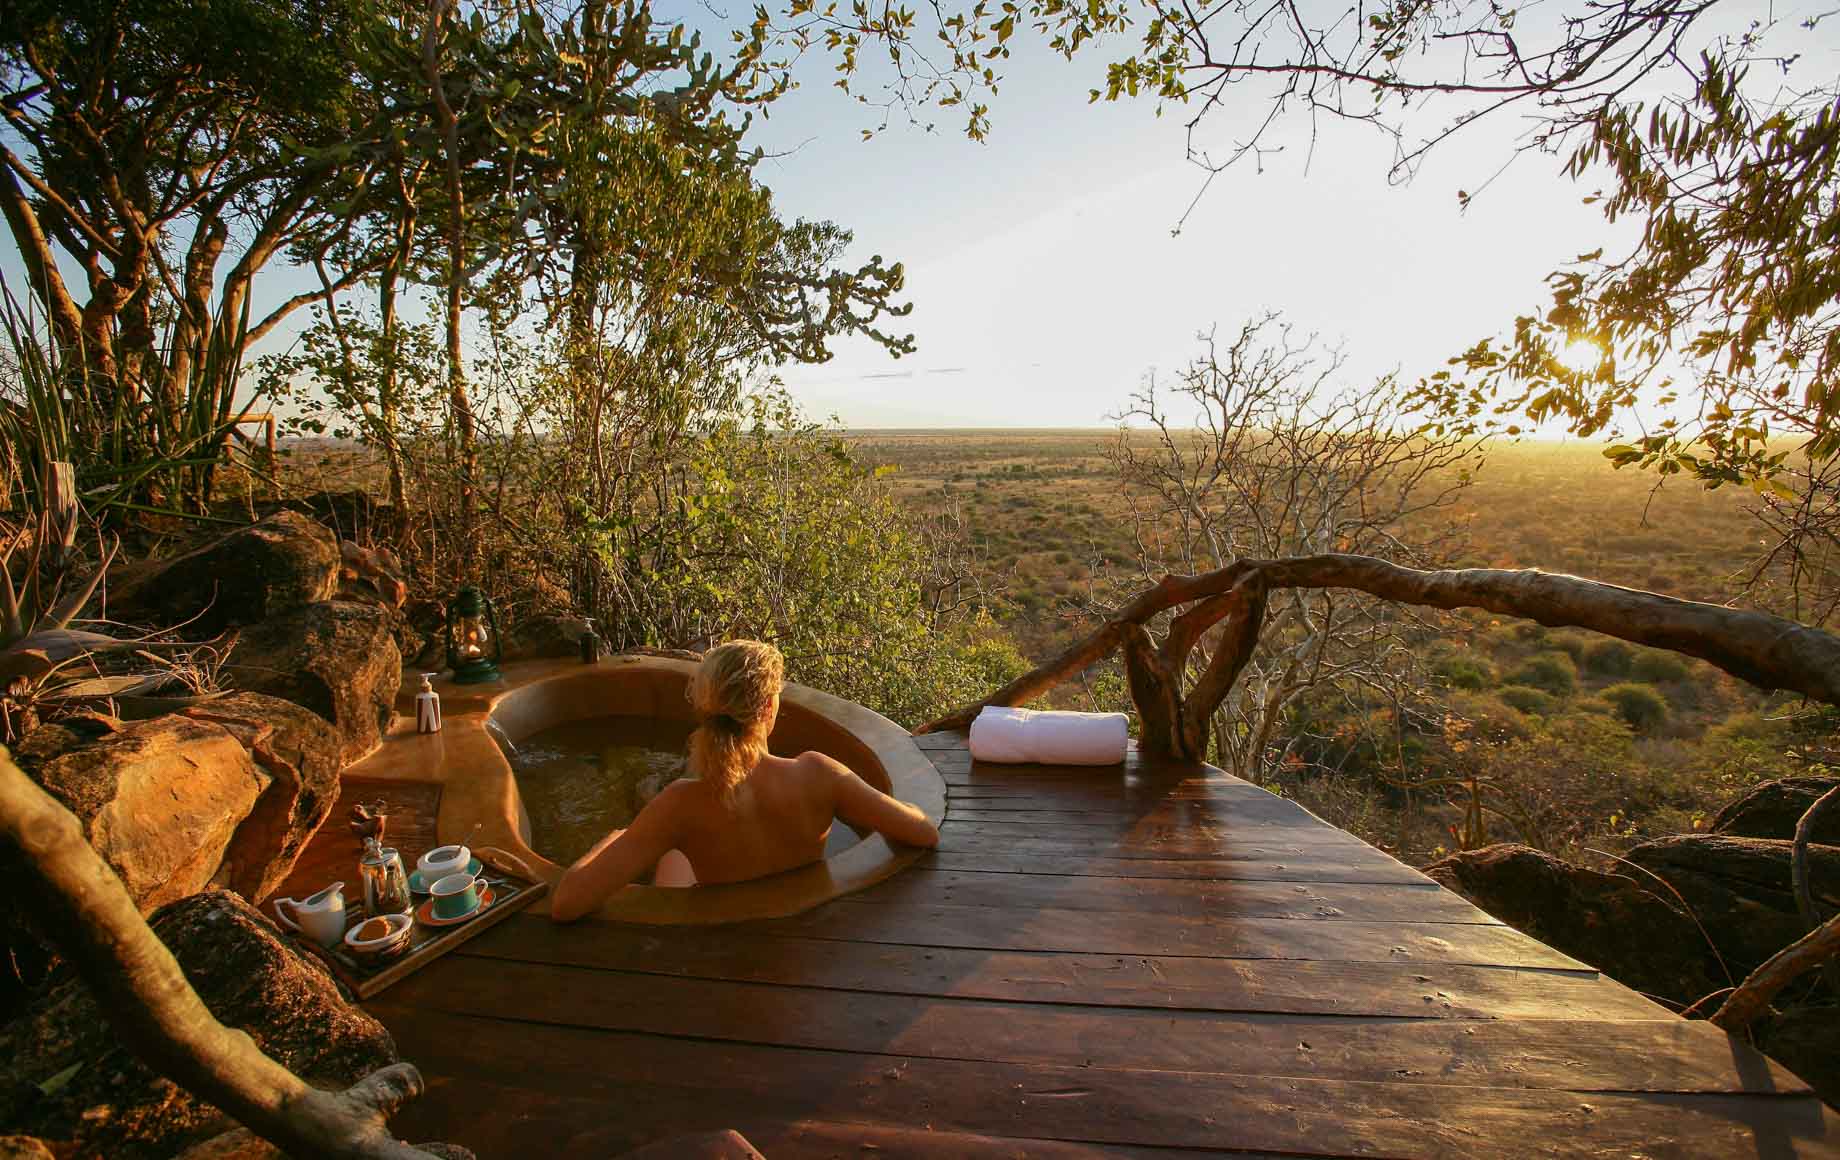 Enjoying sunset while taking bath, Meru National Park, Kenya